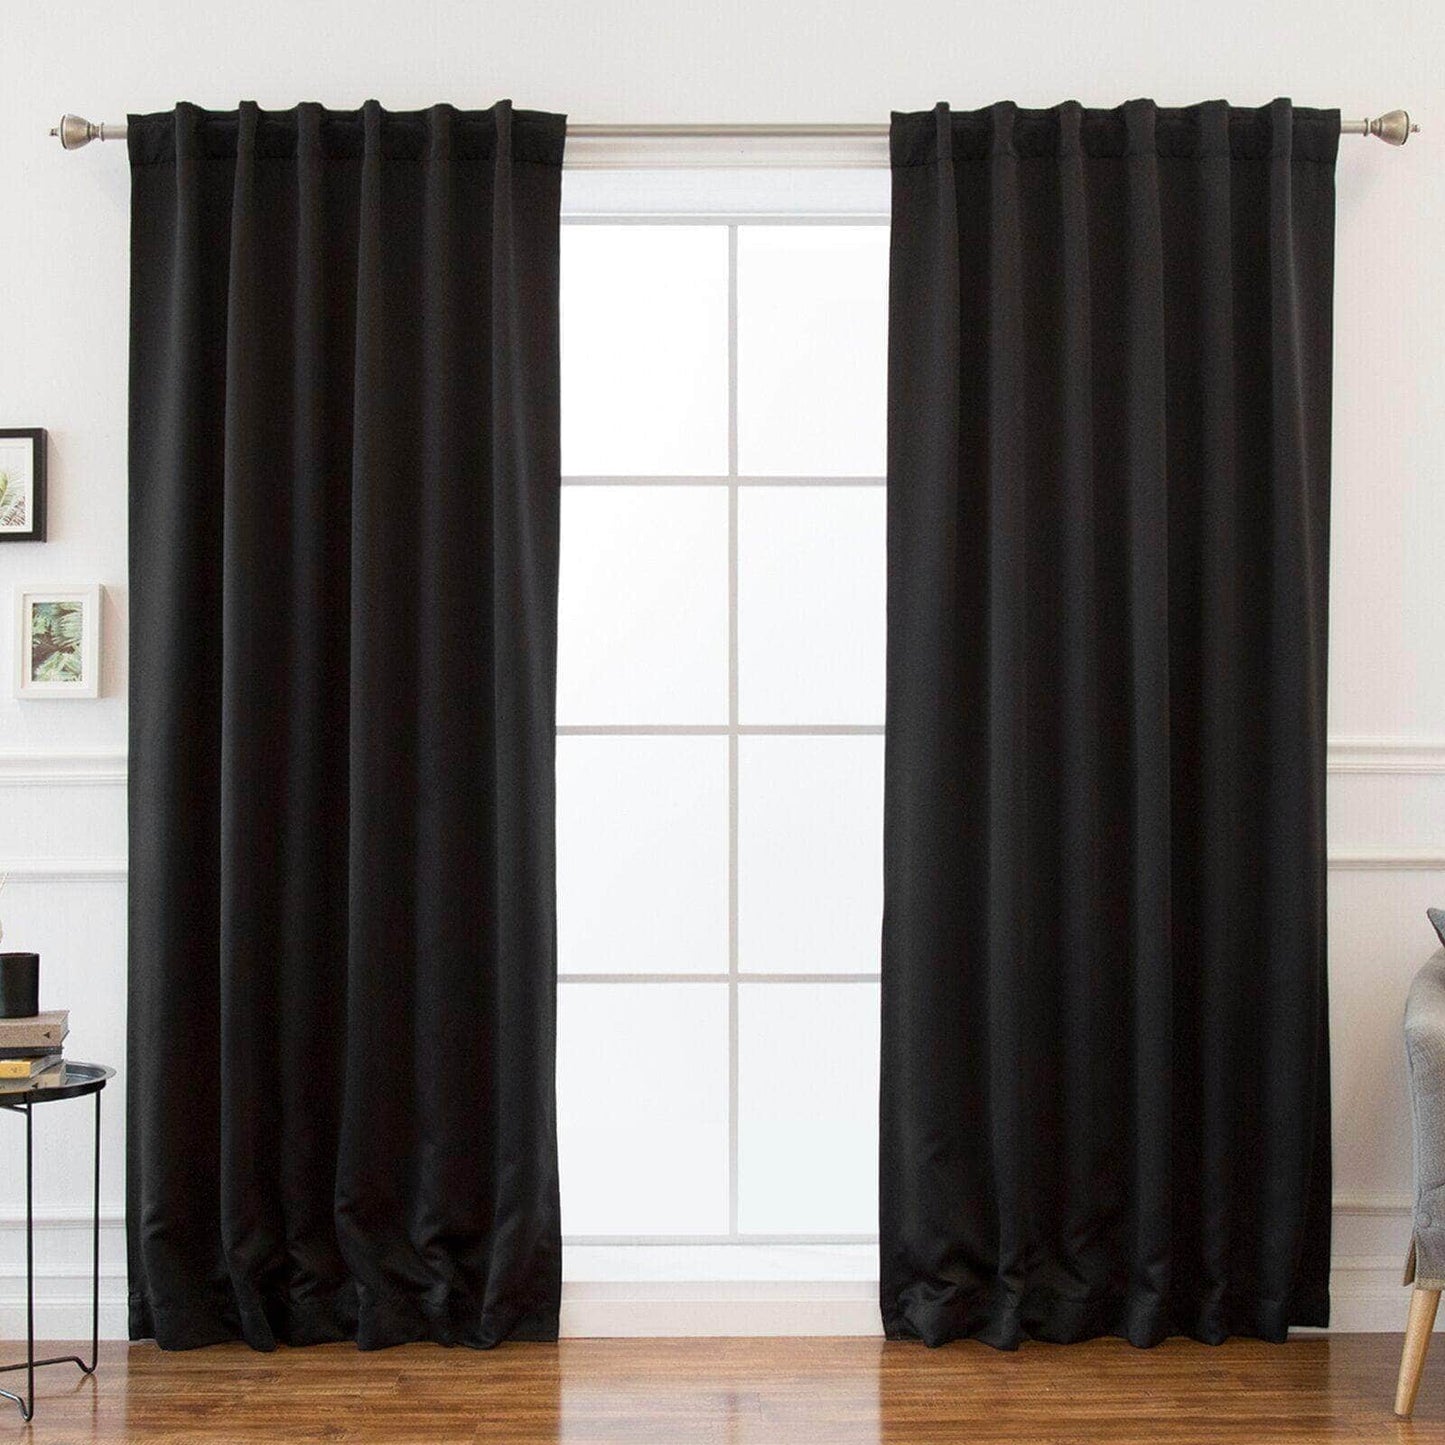 Penguin Group Curtains 250 H × 280 W (cm) Black Velvet RikTig curtain